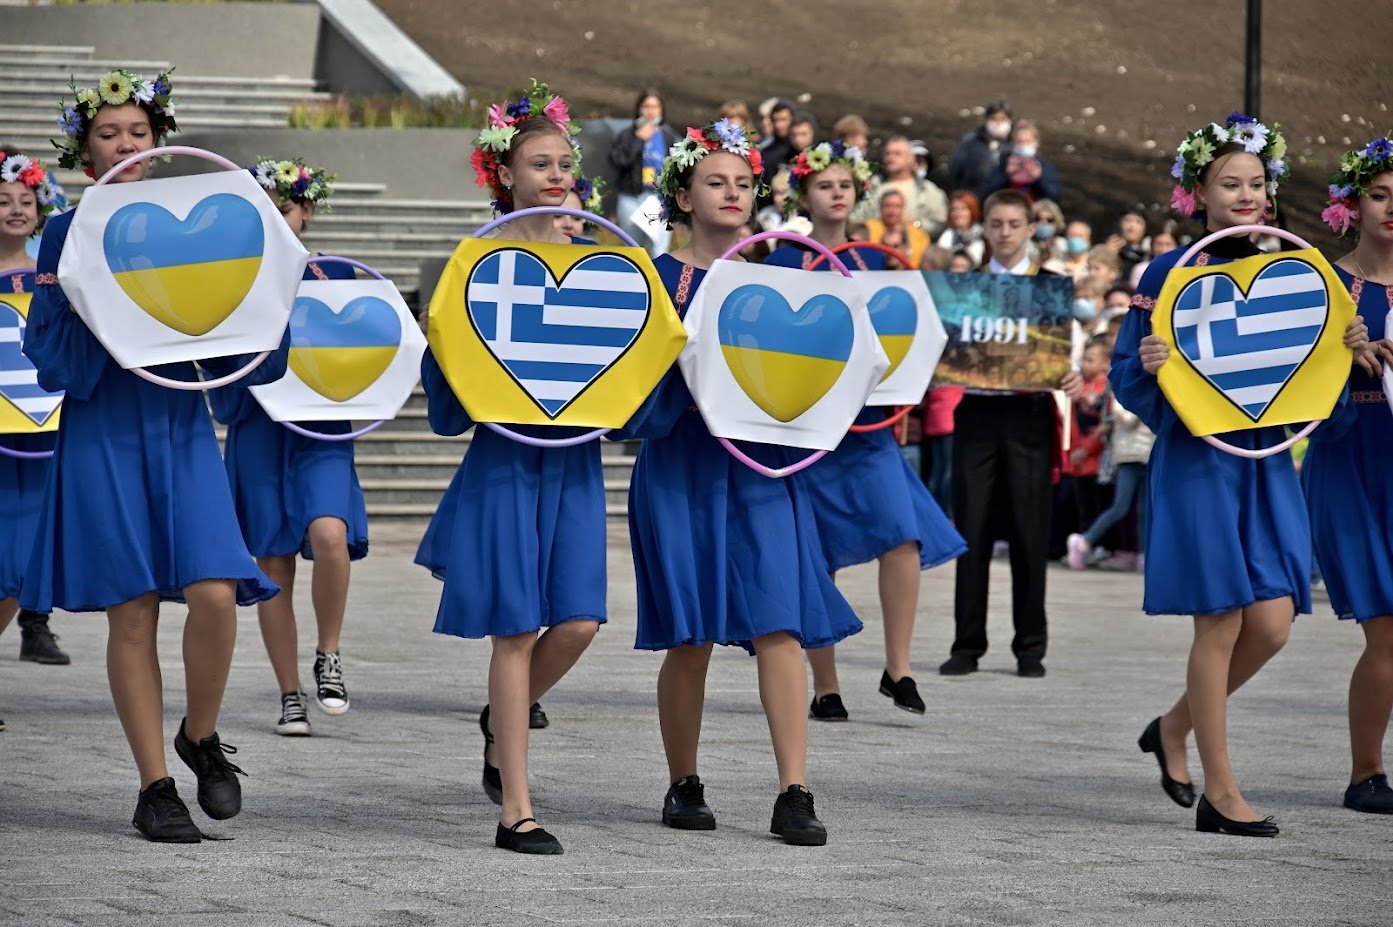 Greek Festival Ukraine